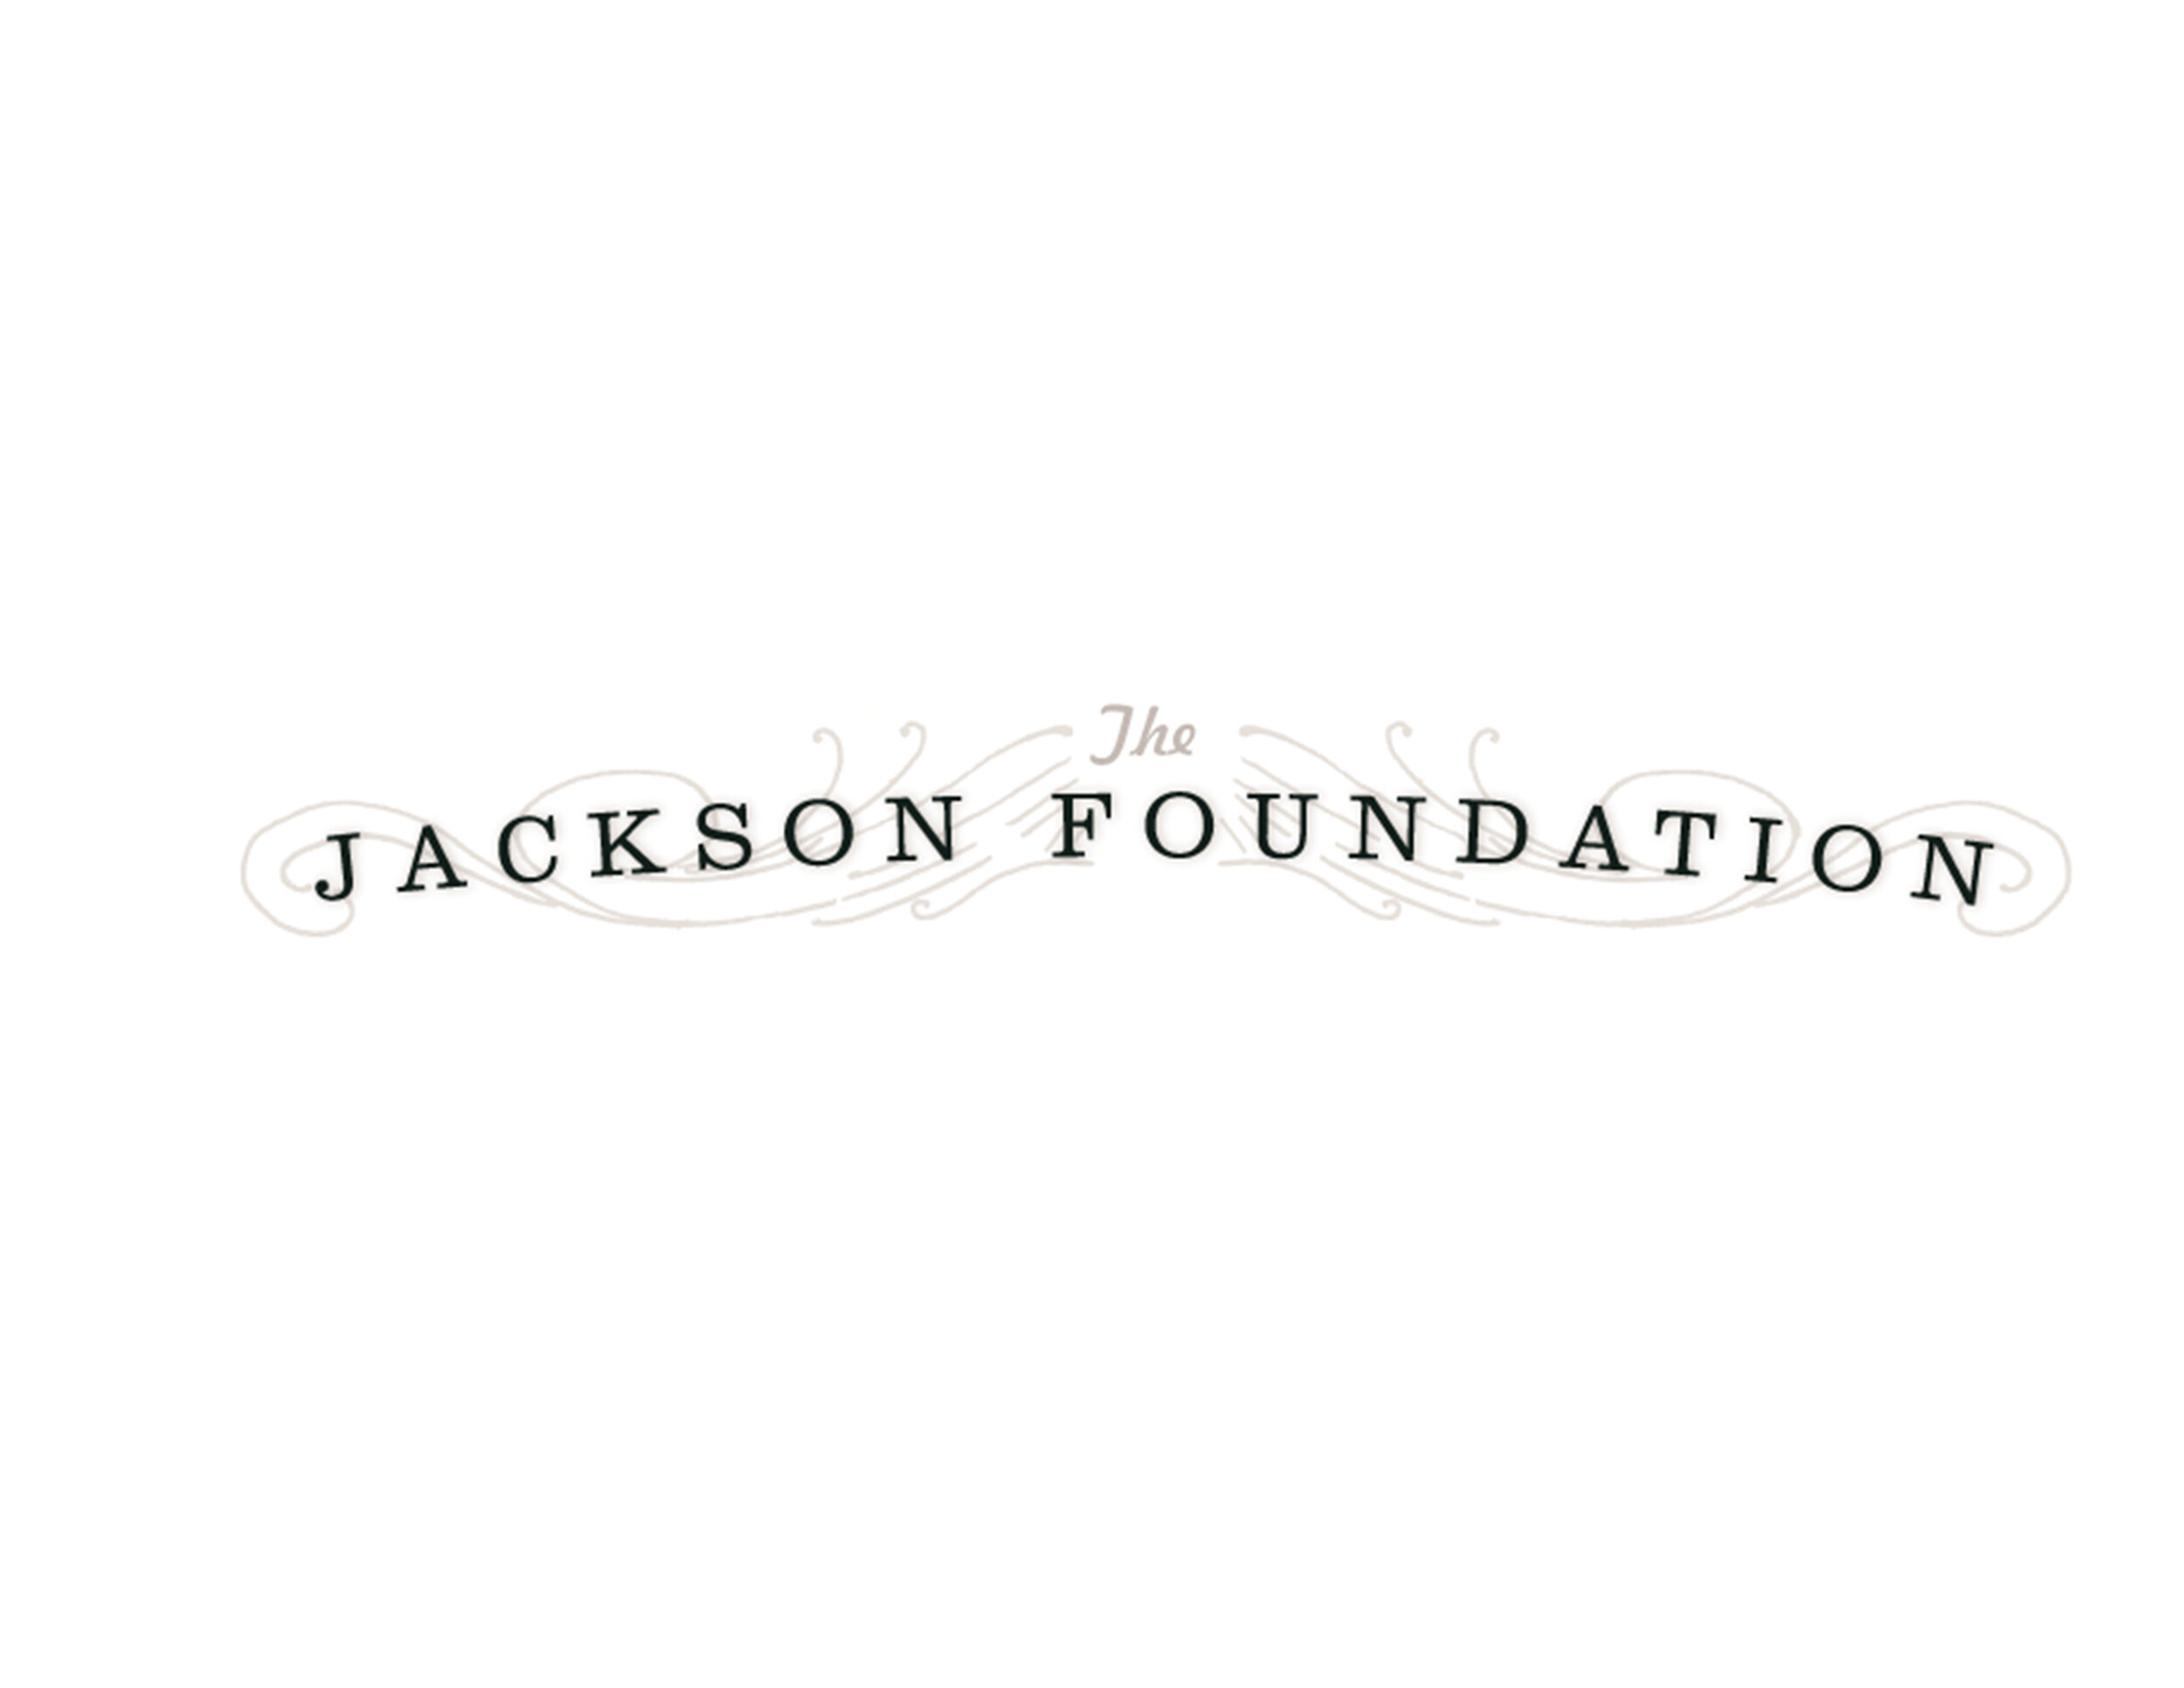 Jackson Foundation for website.jpg